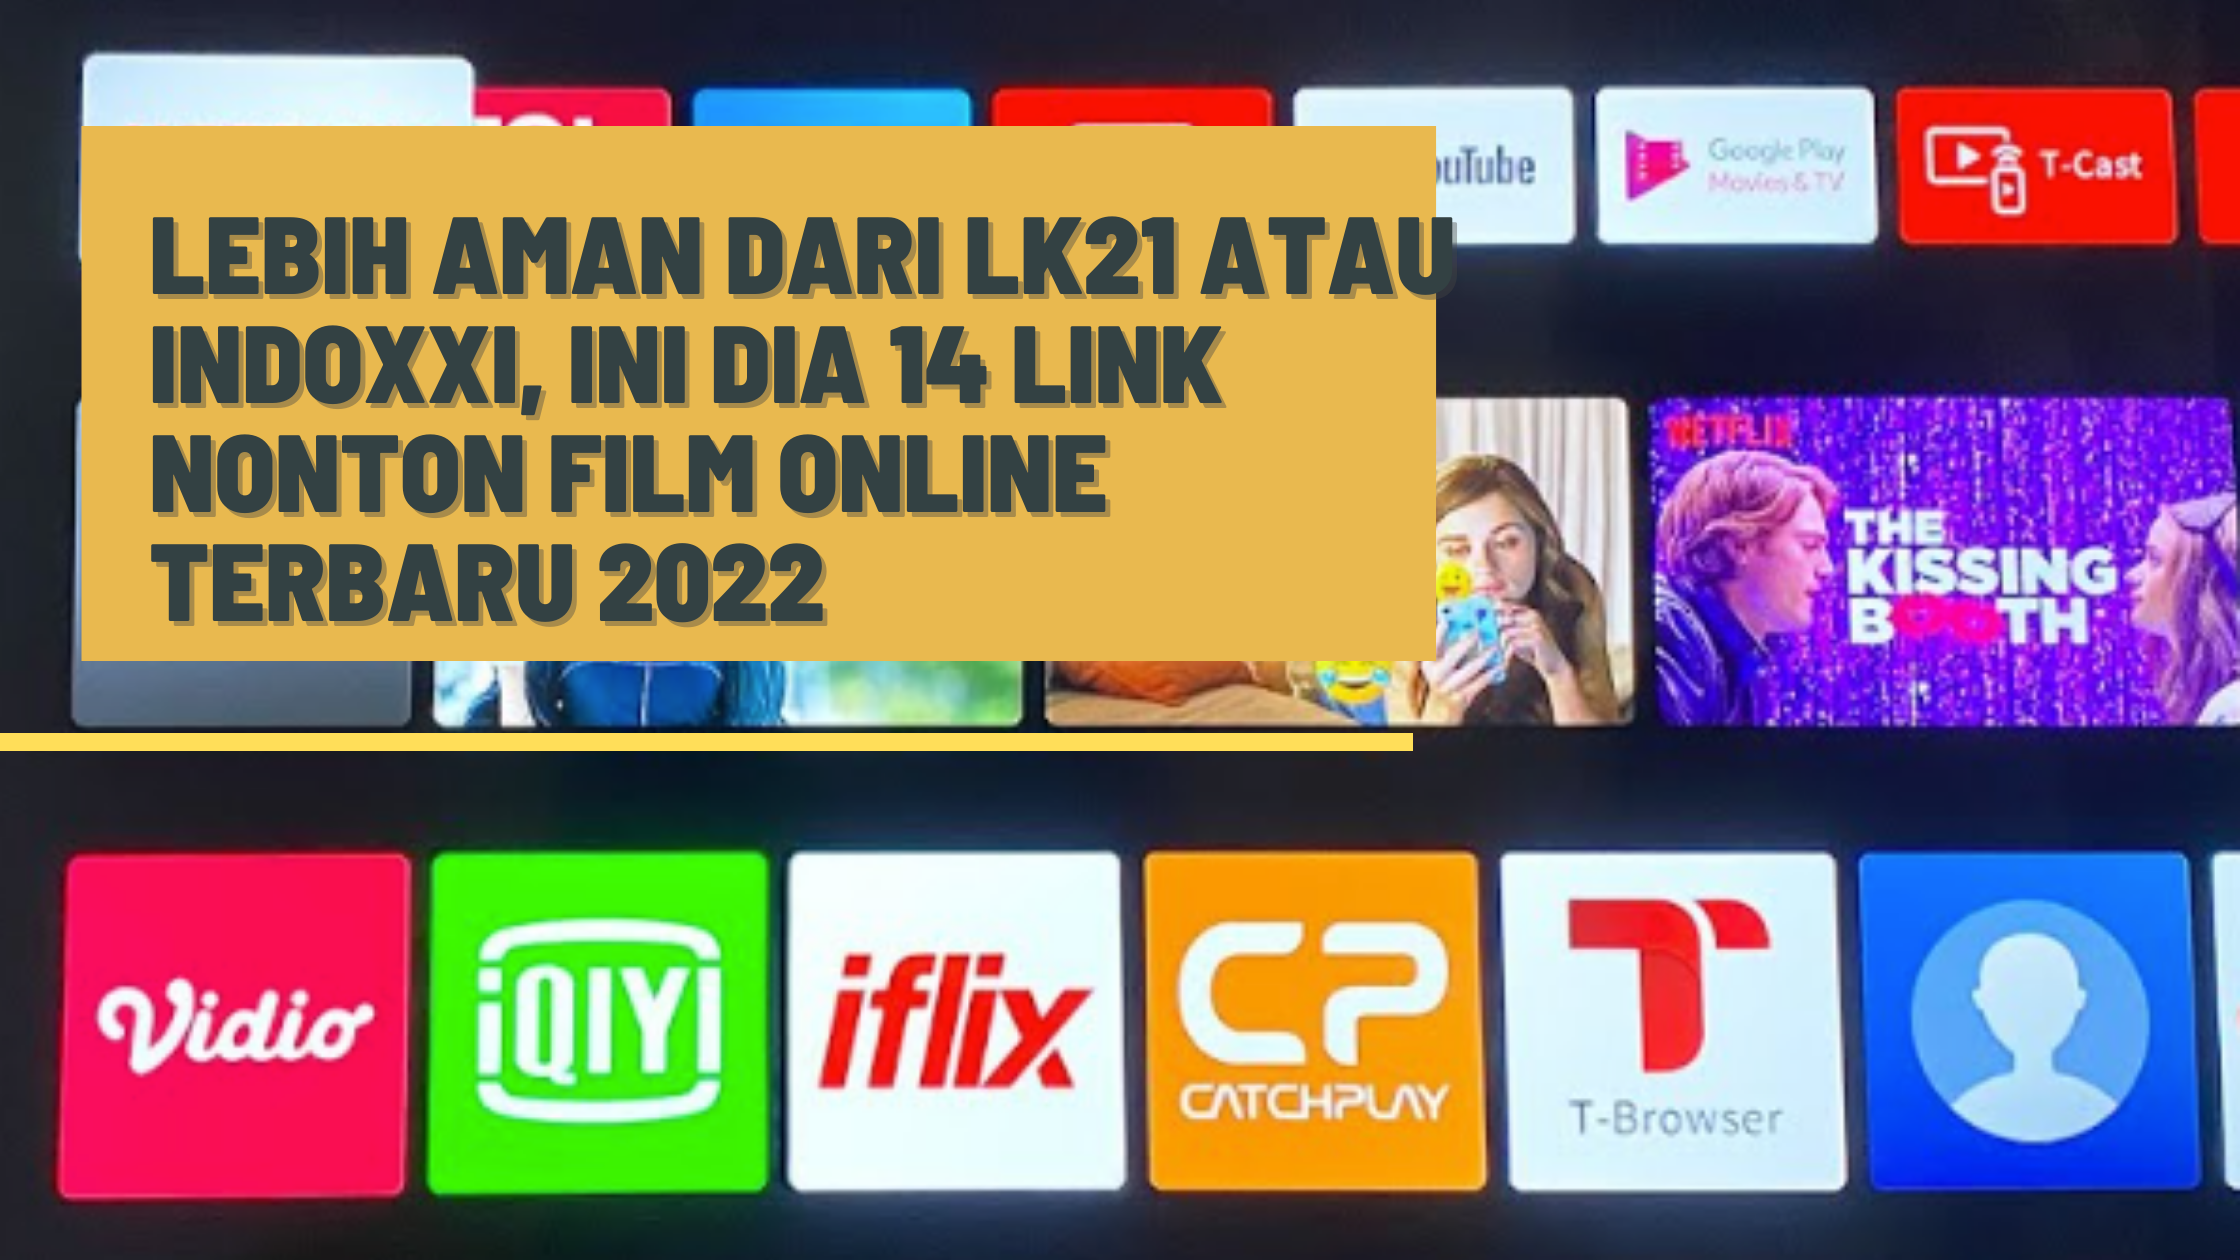 Lebih Aman dari LK21 atau IndoXXI, Ini Dia 14 Link Nonton Film Online Terbaru 2022